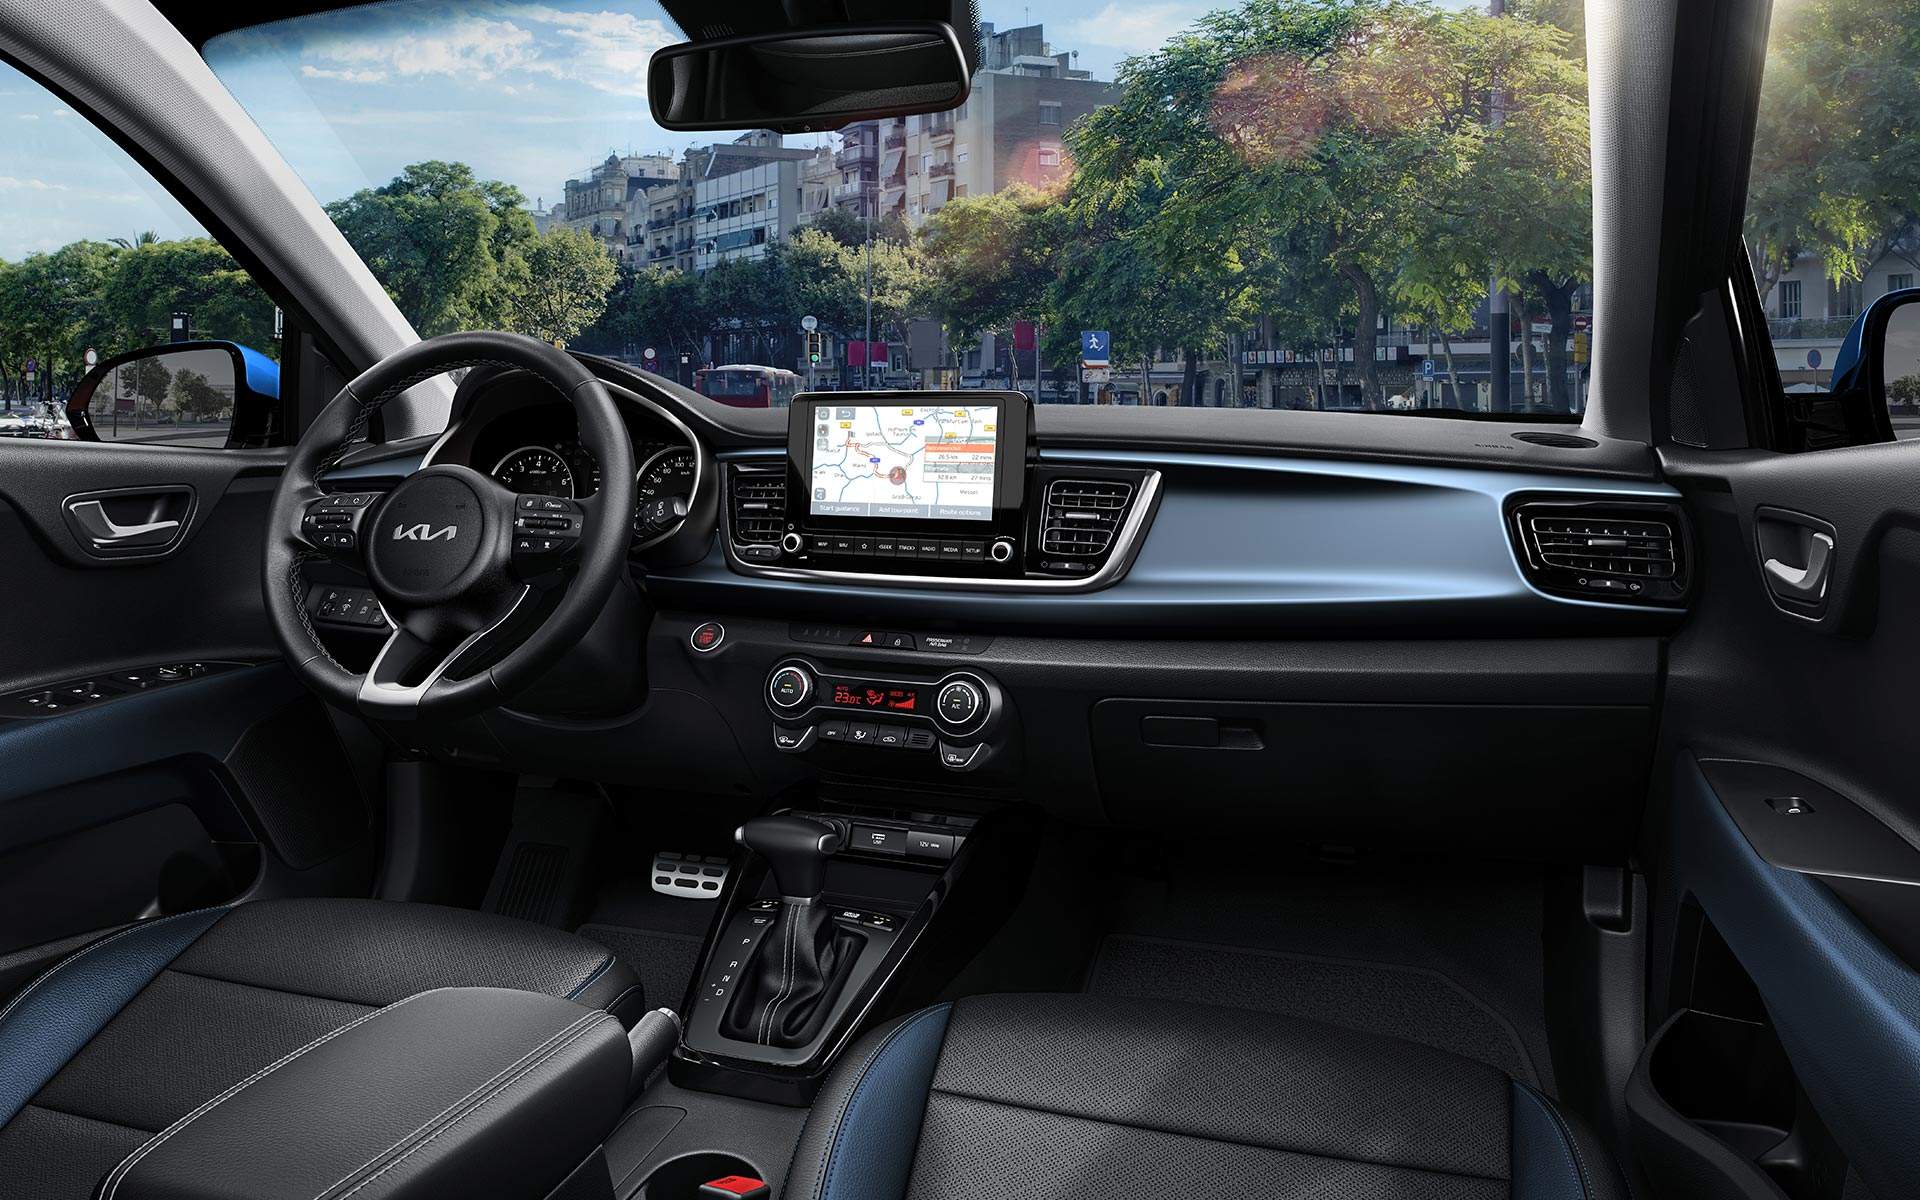 The new Kia Rio comfortable and smart interior